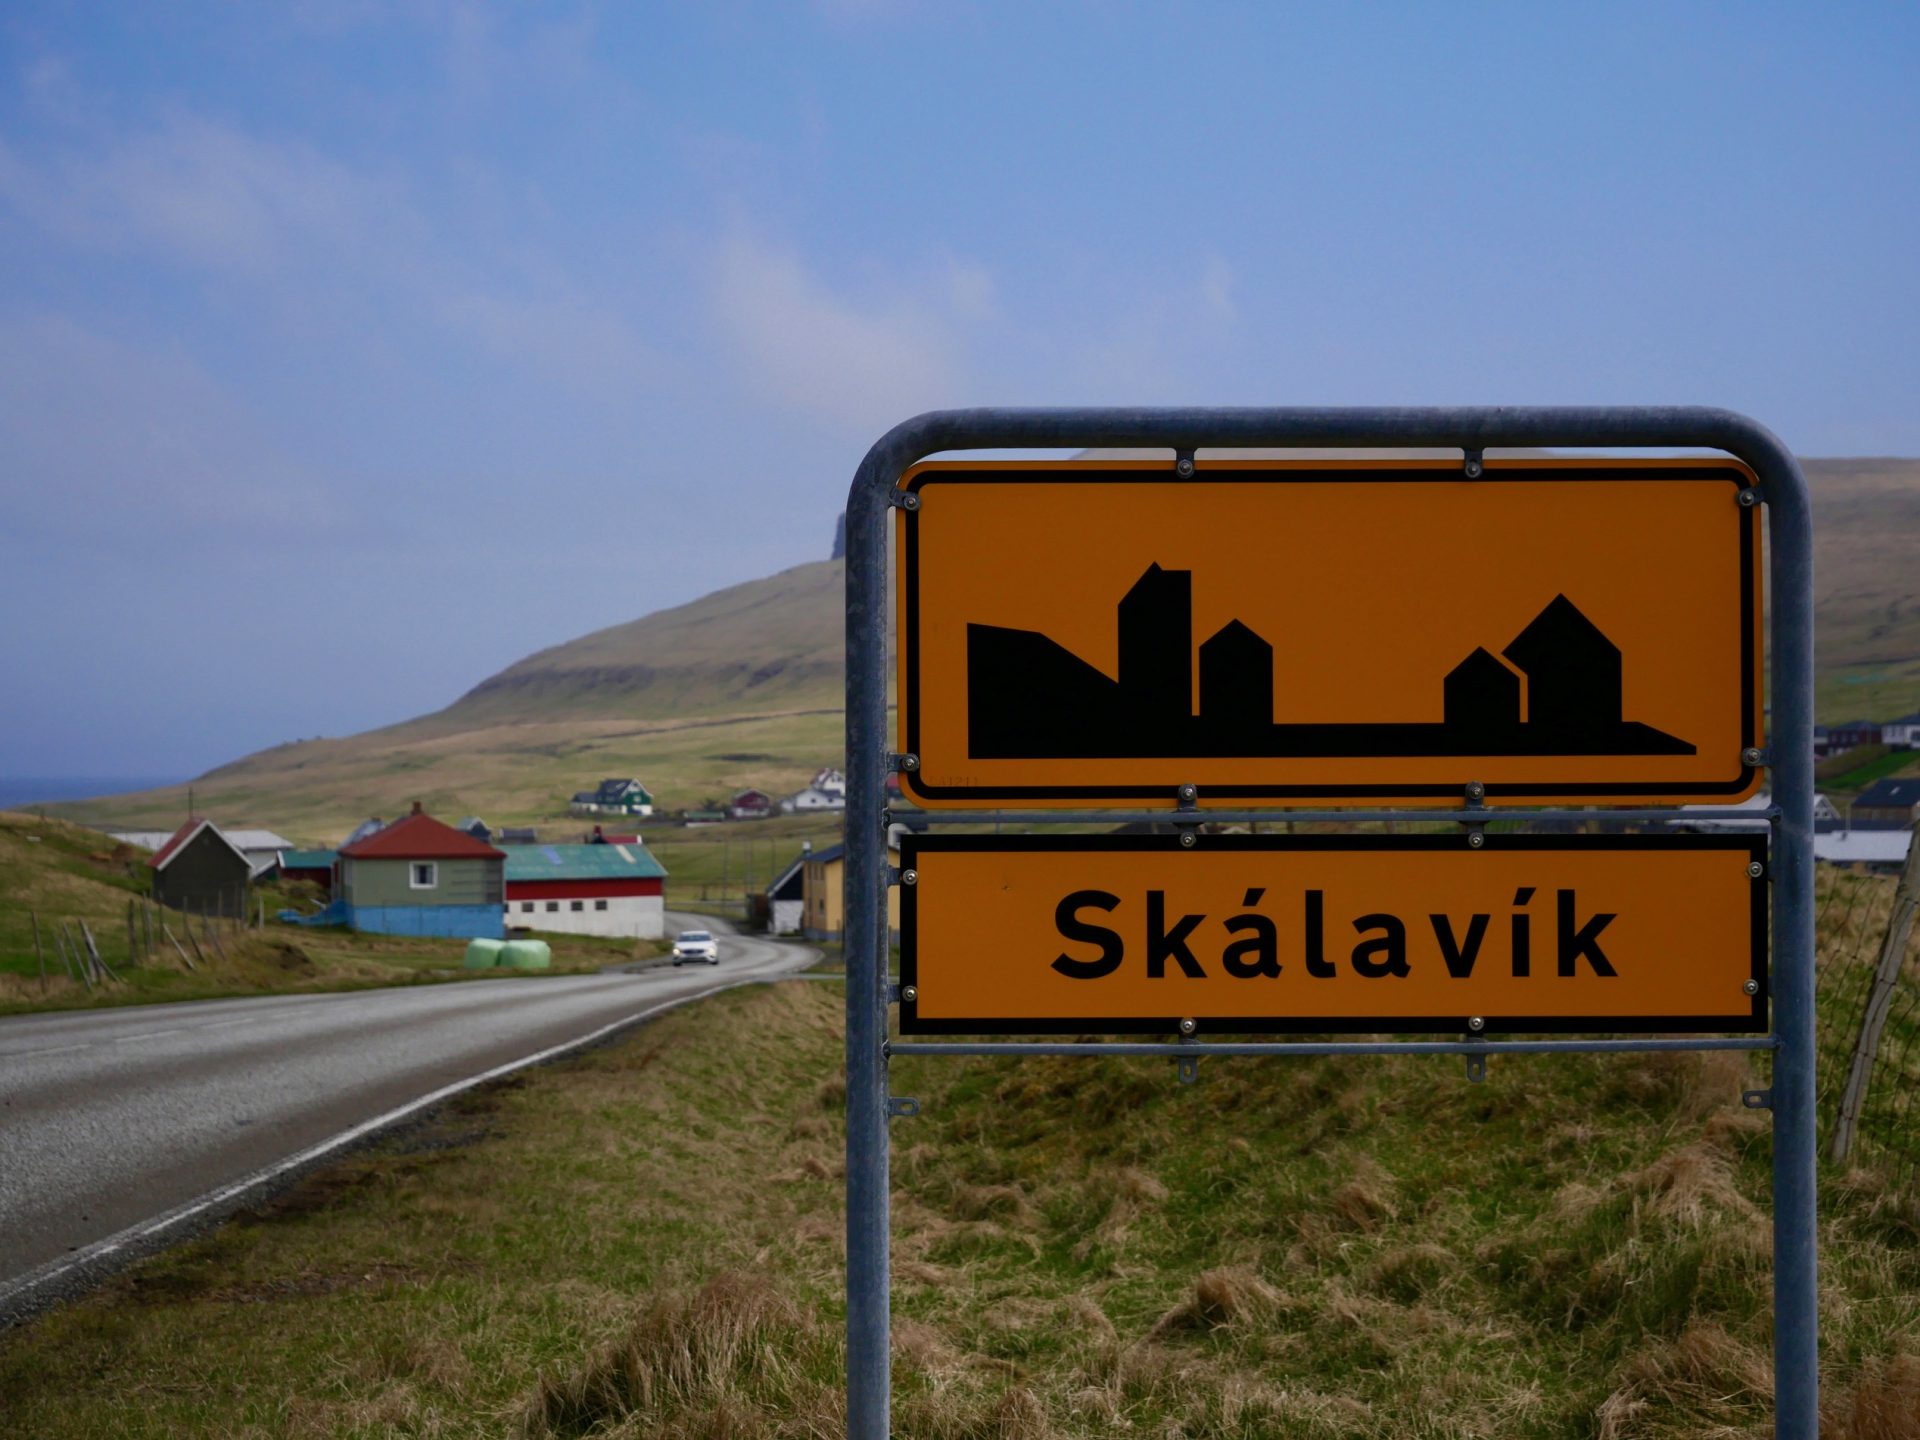 Skalavik dorpje sandoy